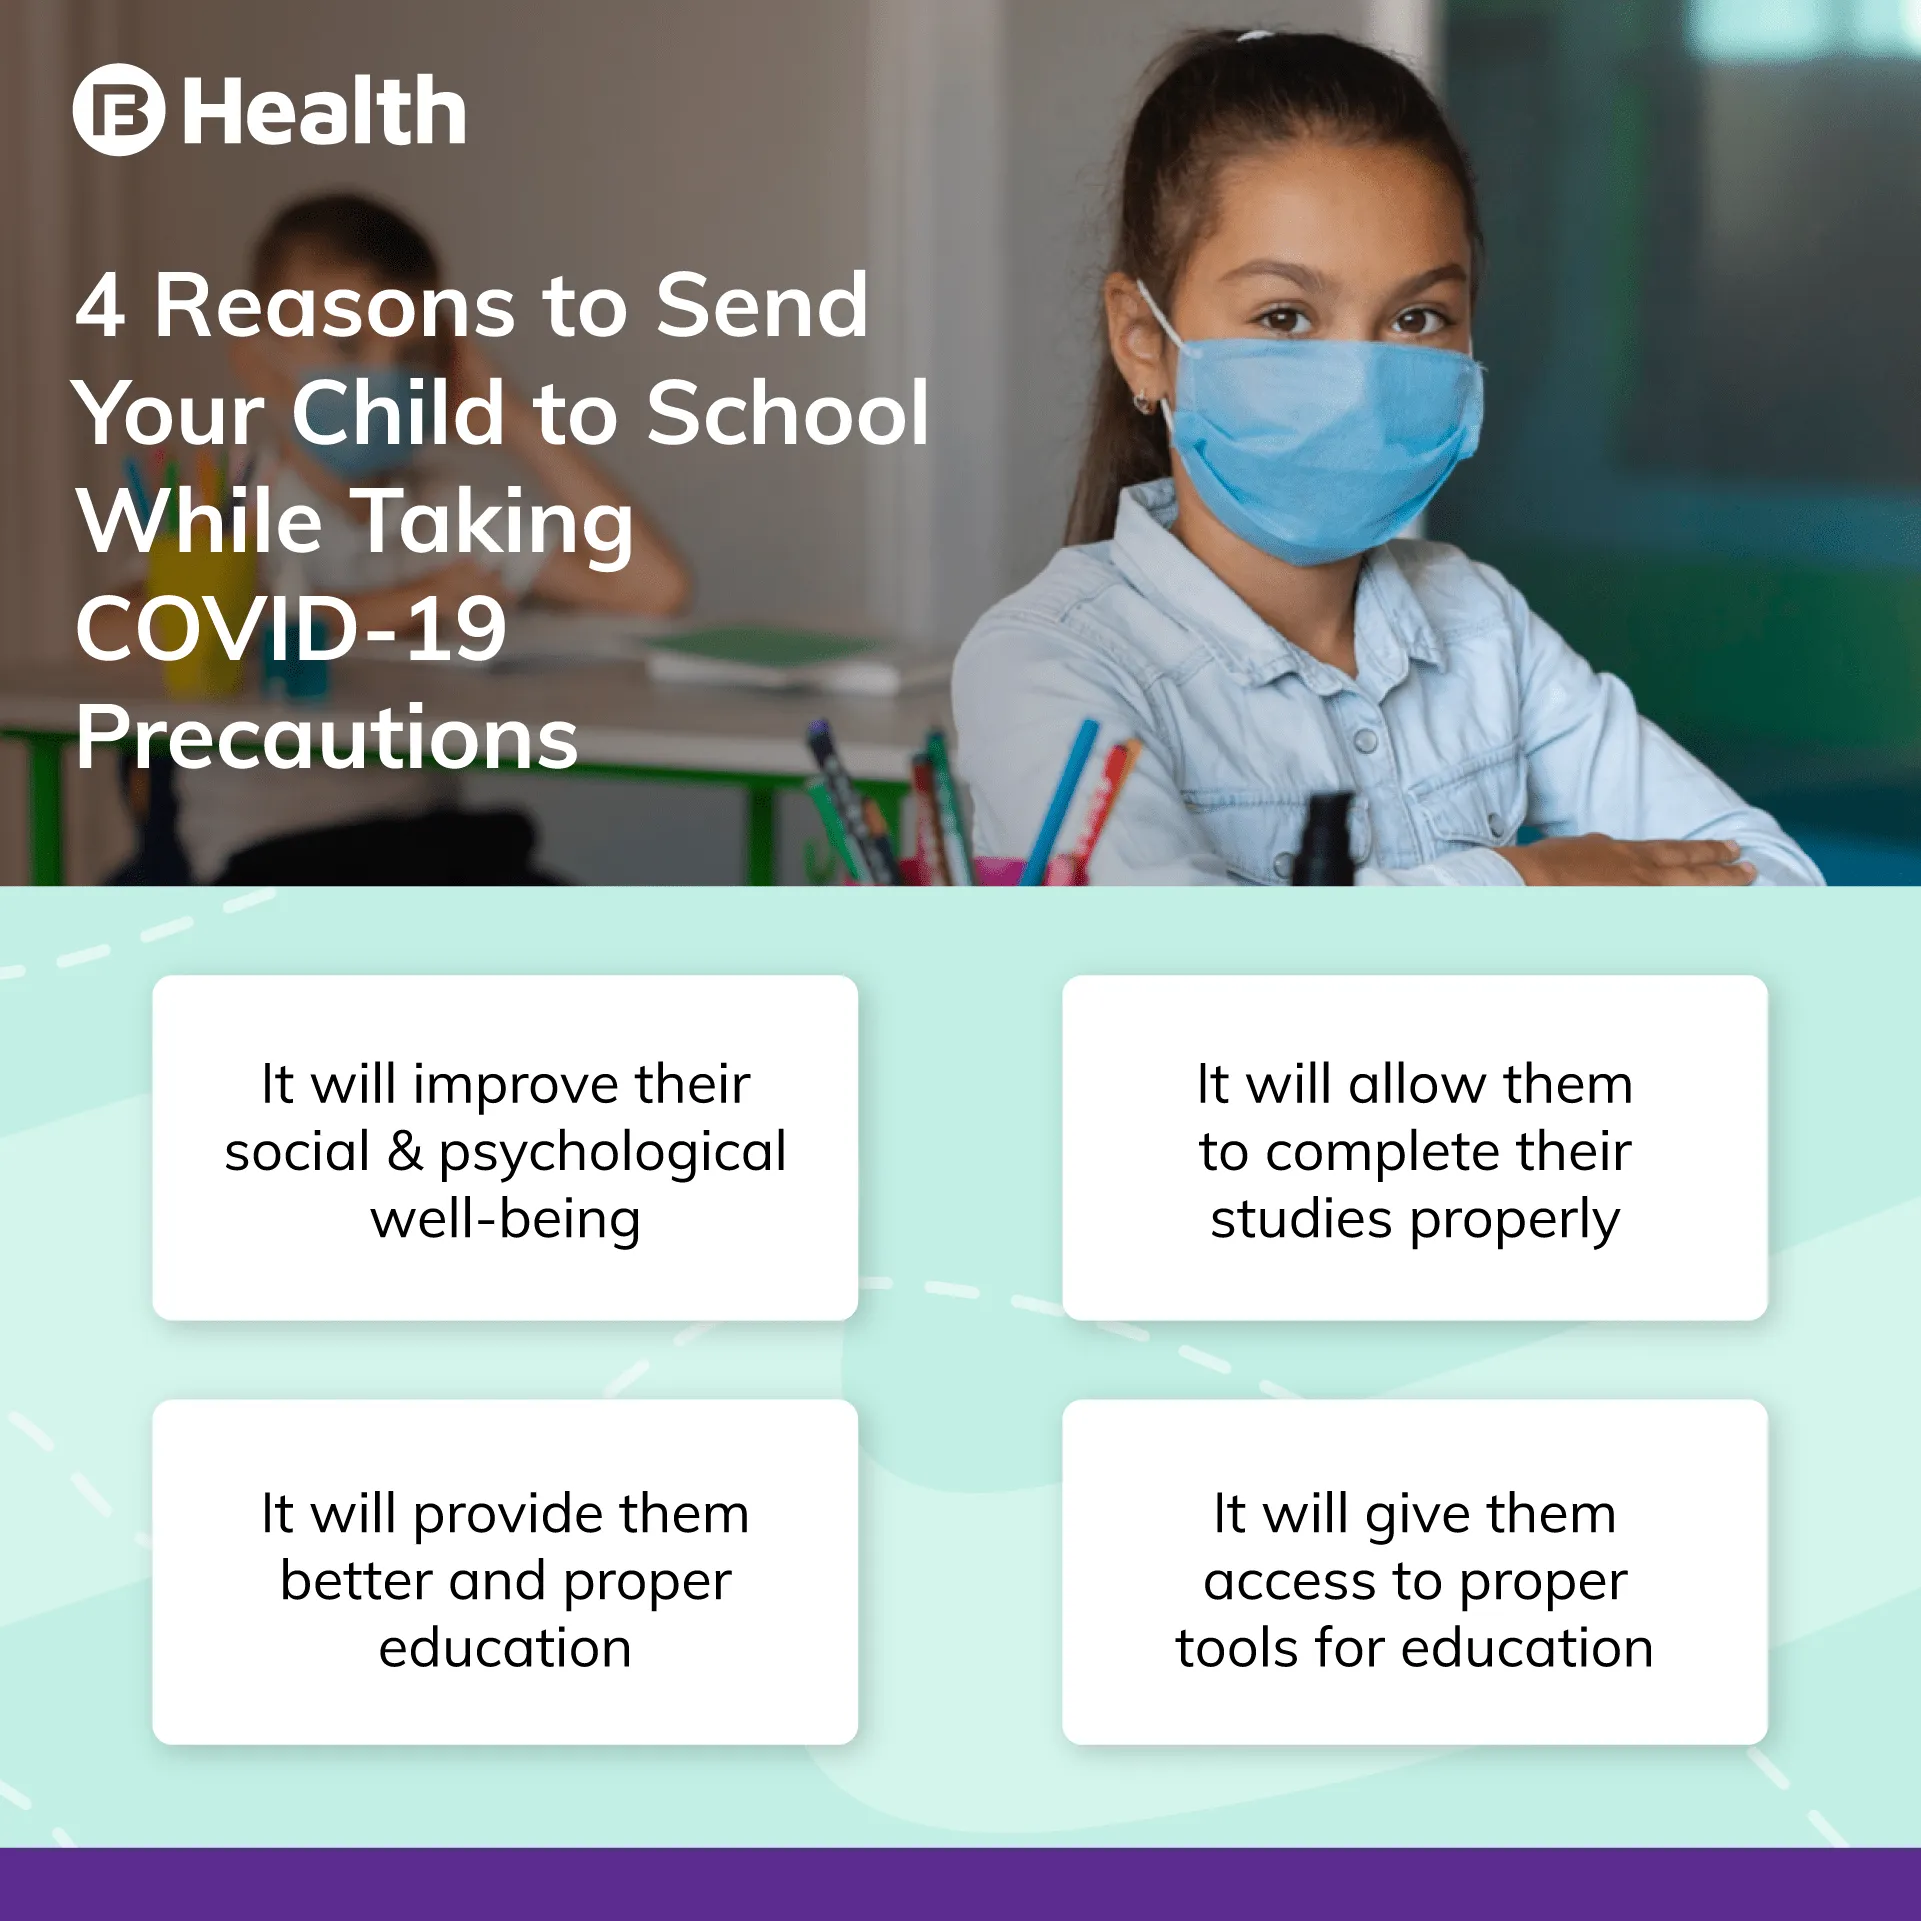 COVID - 19 precautions for Child for school